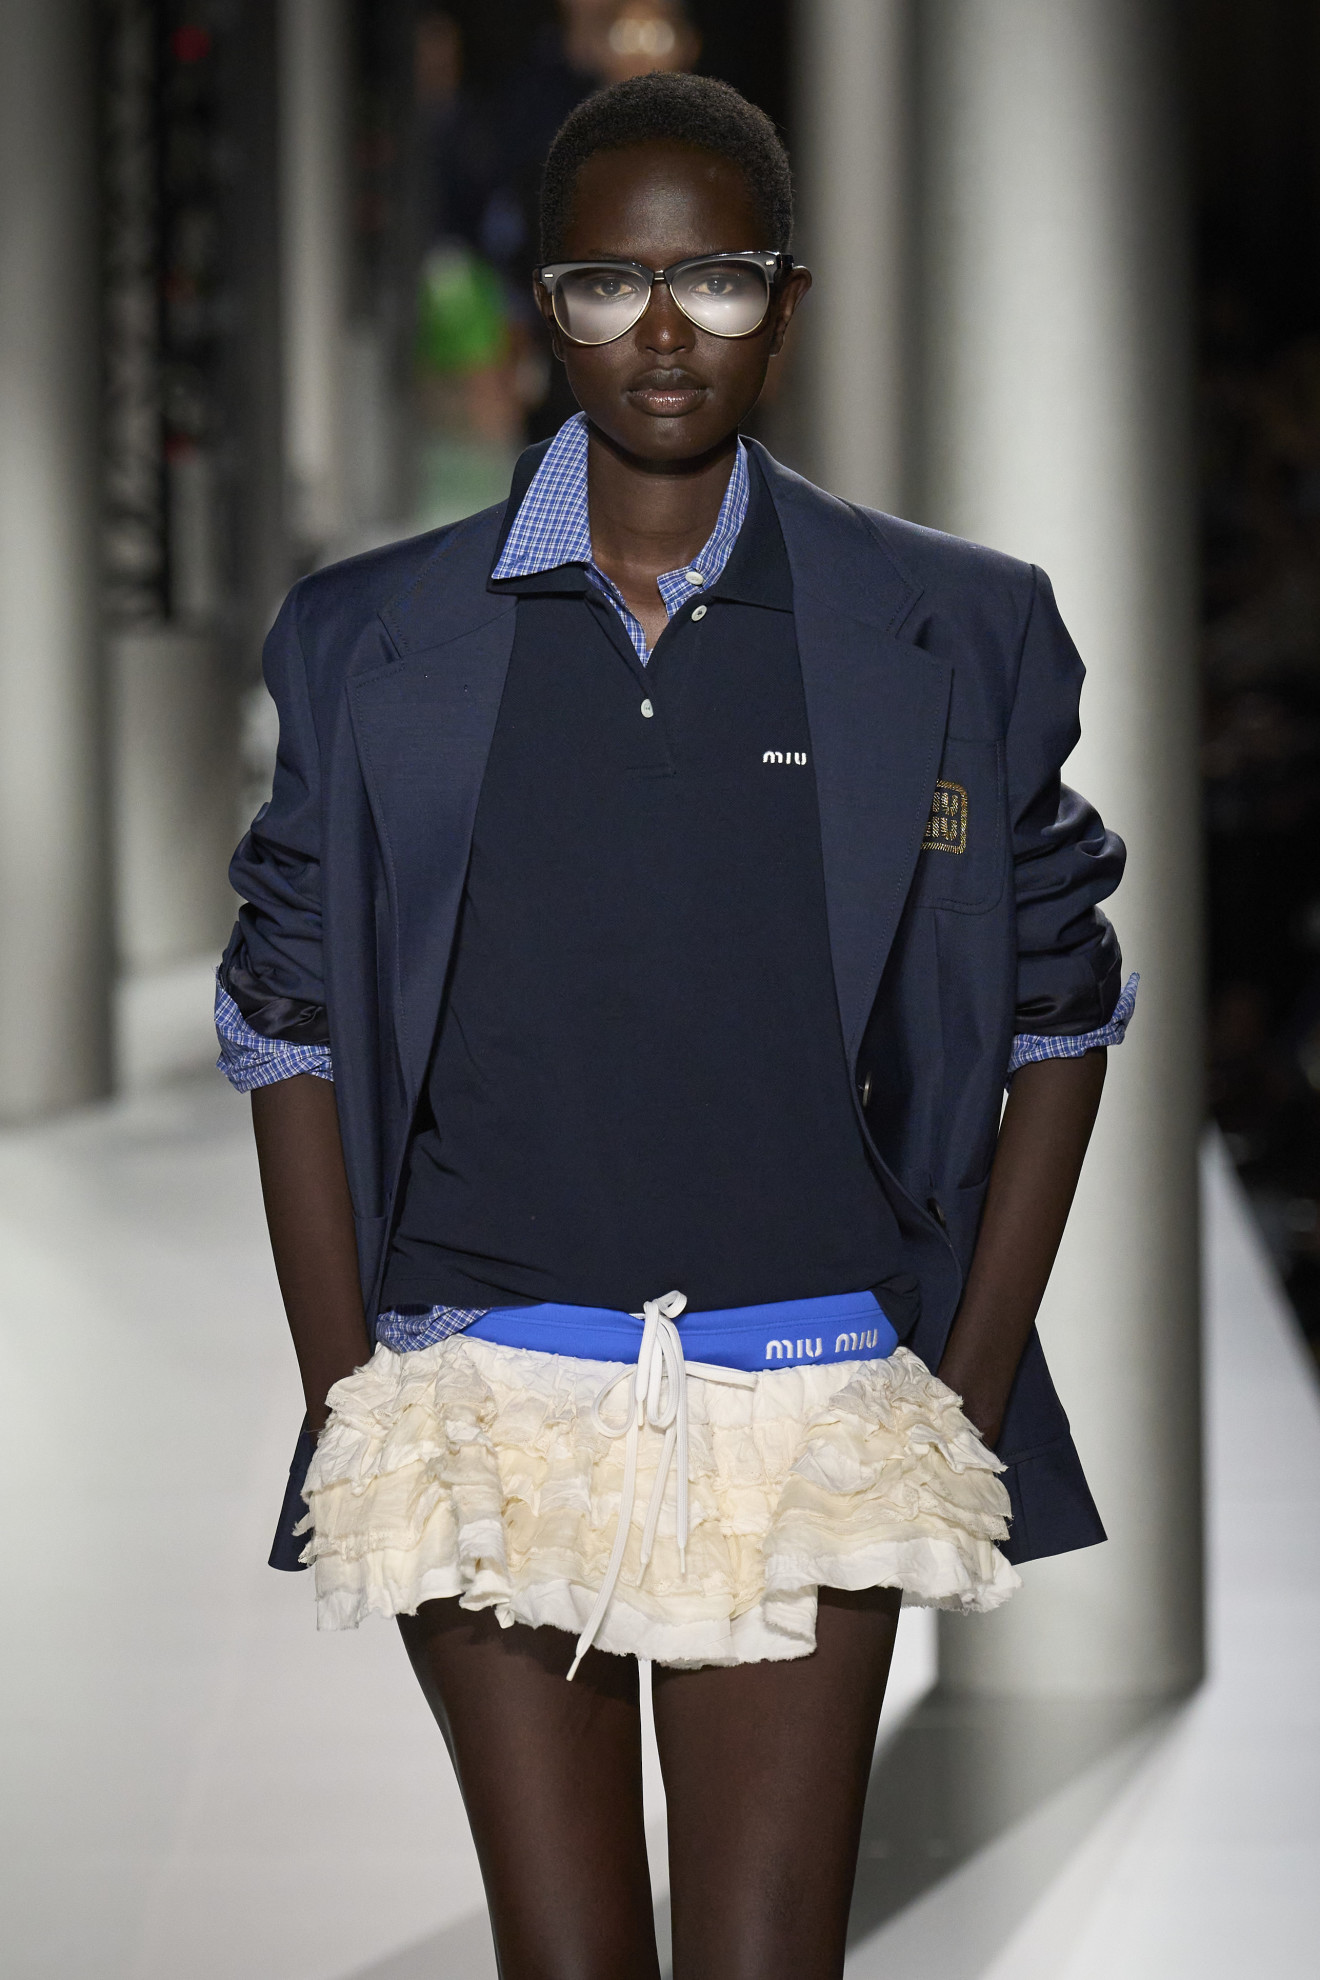 Стилисты и модницы утверждают, что юбки с низкой посадкой — еще один востребованный летний тренд